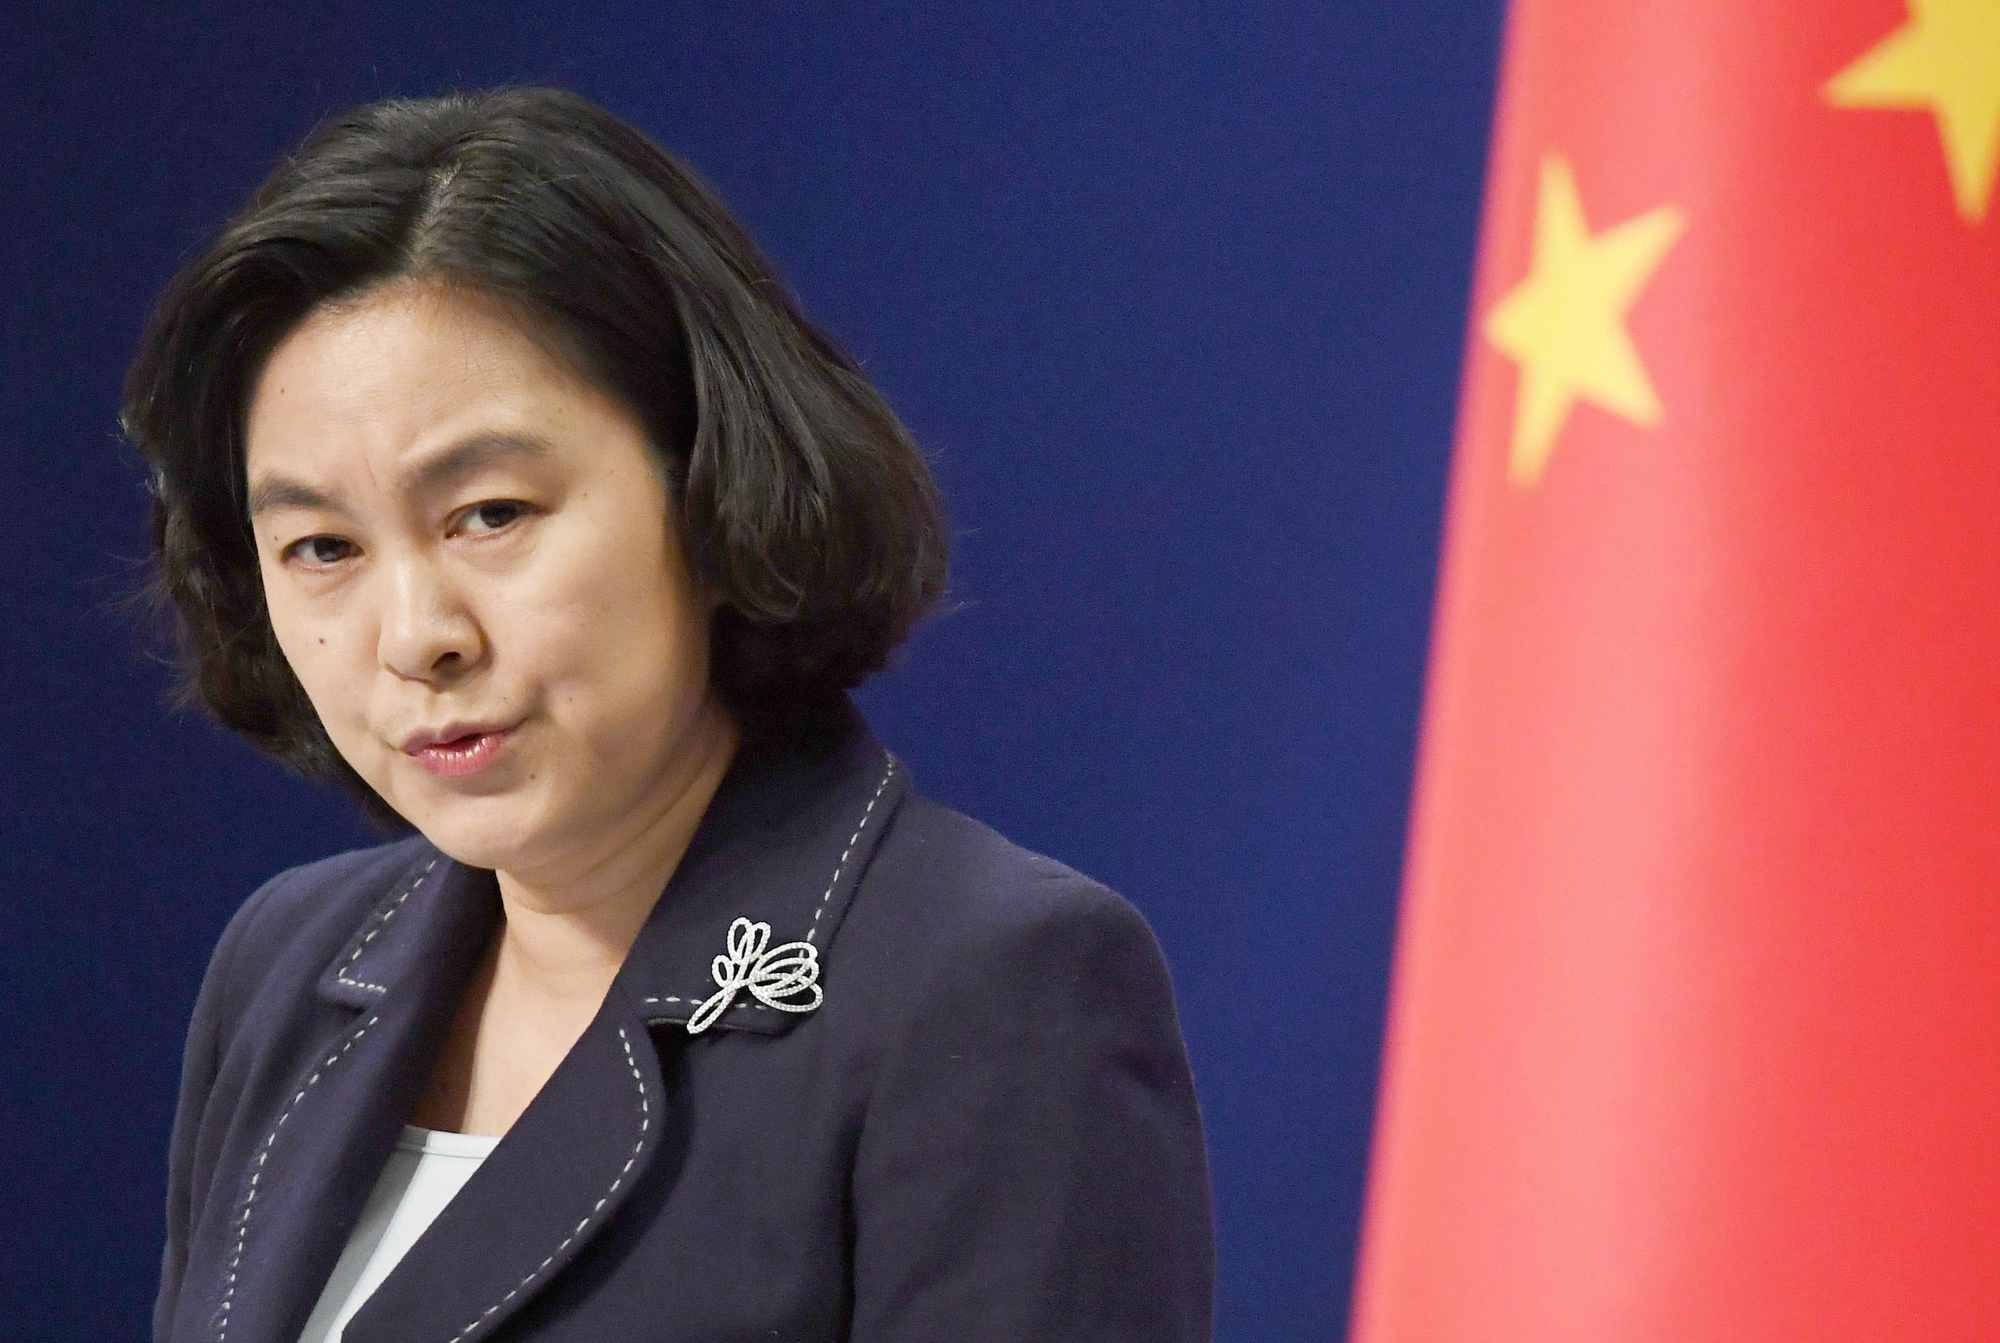 Trung Quốc ủng hộ điều tra về nguồn gốc của Covid-19, phát ngôn viên Bộ Ngoại giao Trung Quốc nhấn mạnh (ảnh: Reuters)